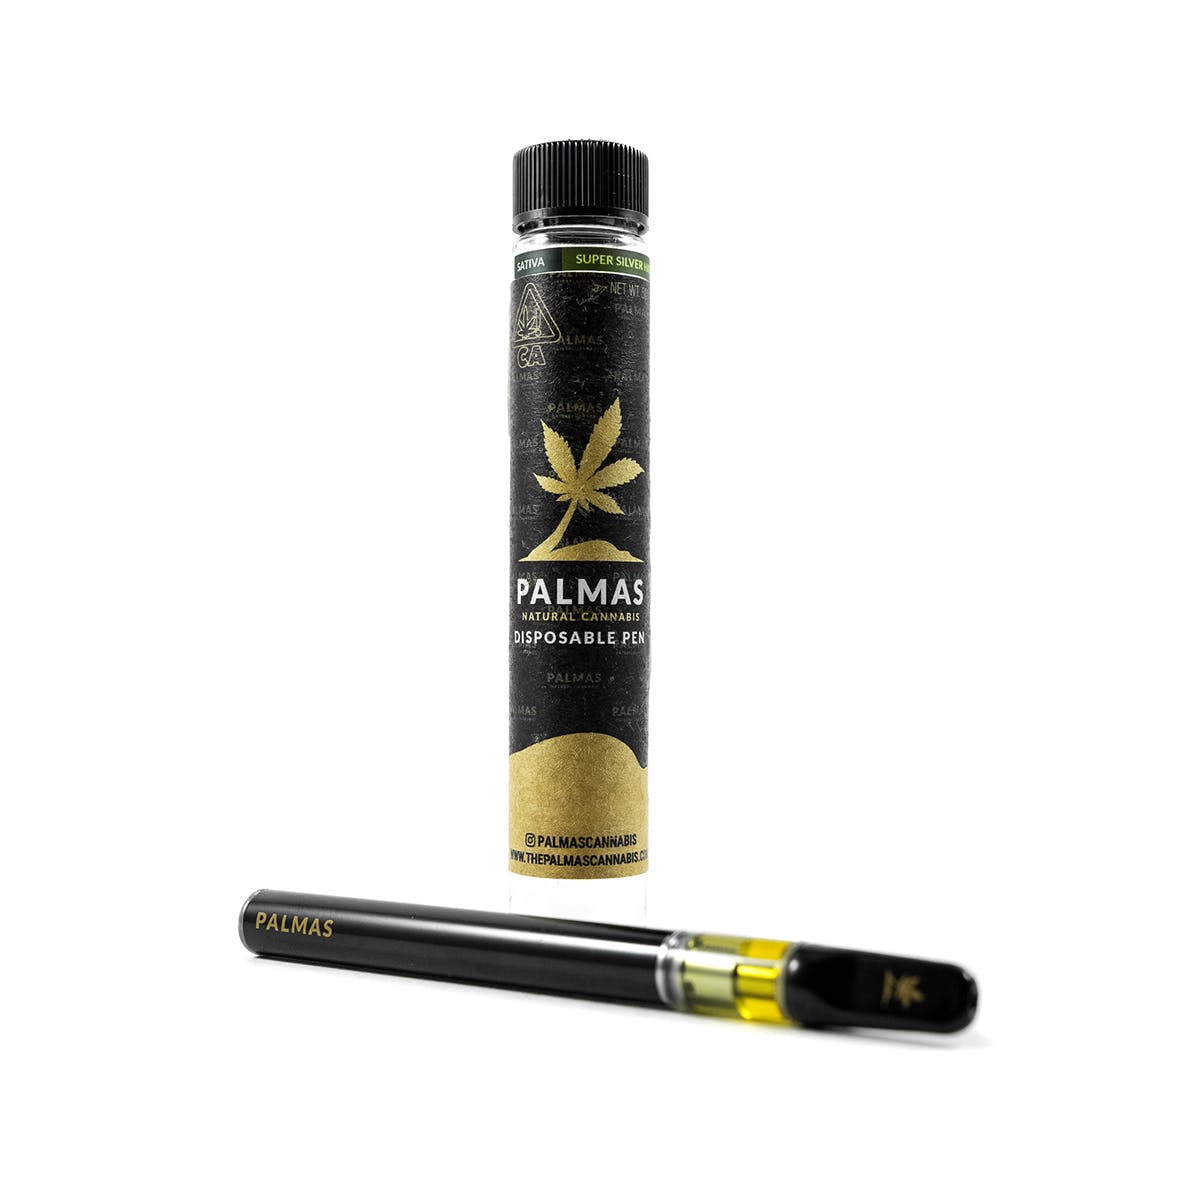 marijuana-dispensaries-pomonas-plug-20-cap-in-pomona-palmas-disposable-super-silver-haze-500mg